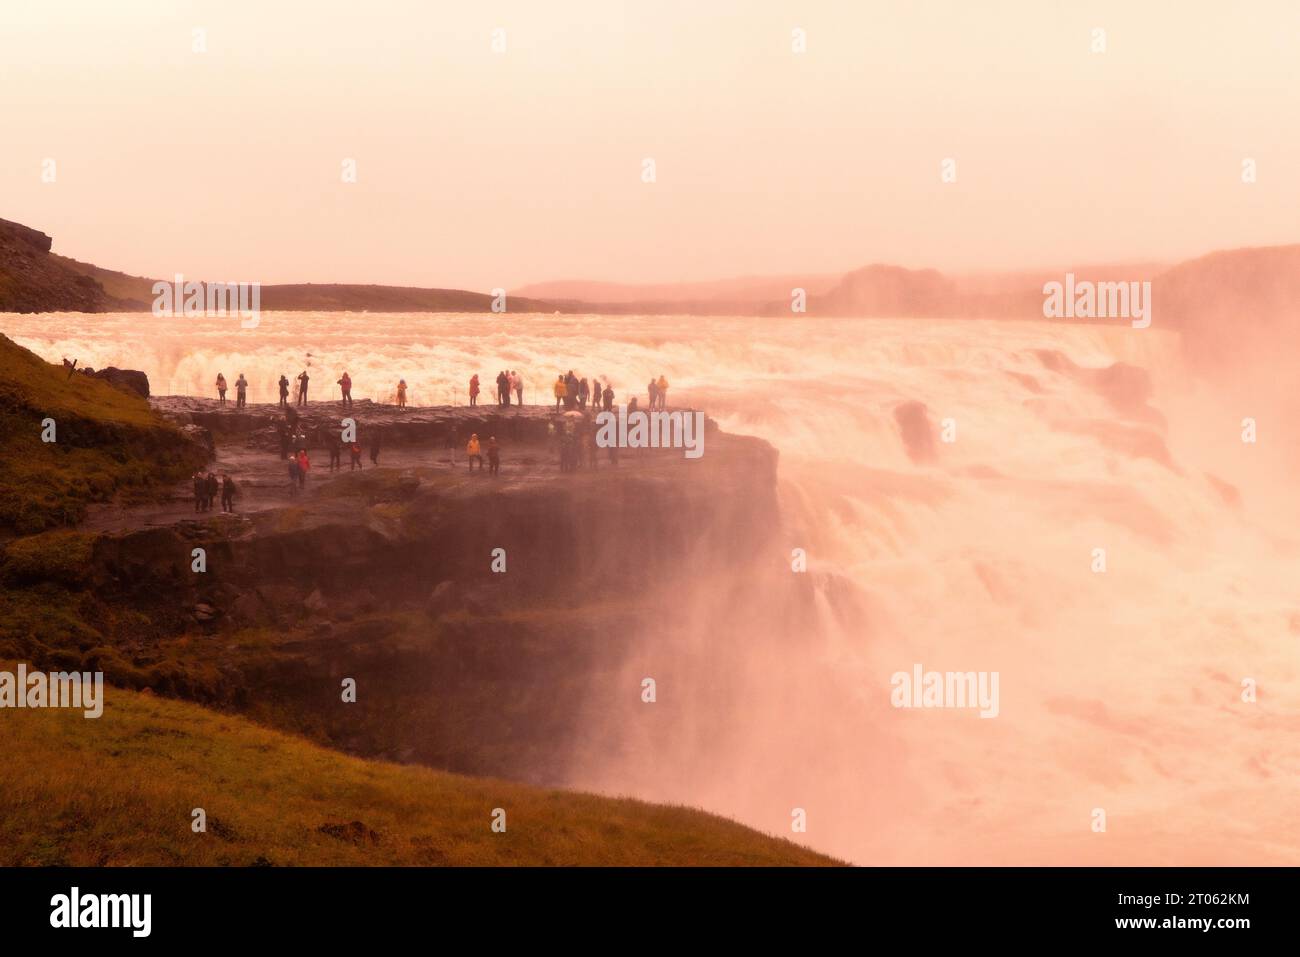 Islande Tourisme ; touristes à Gullfoss Waterfall Islande, une grande chute d'eau célèbre sur le circuit du cercle d'Or, Reykjavik, Islande Europe Banque D'Images